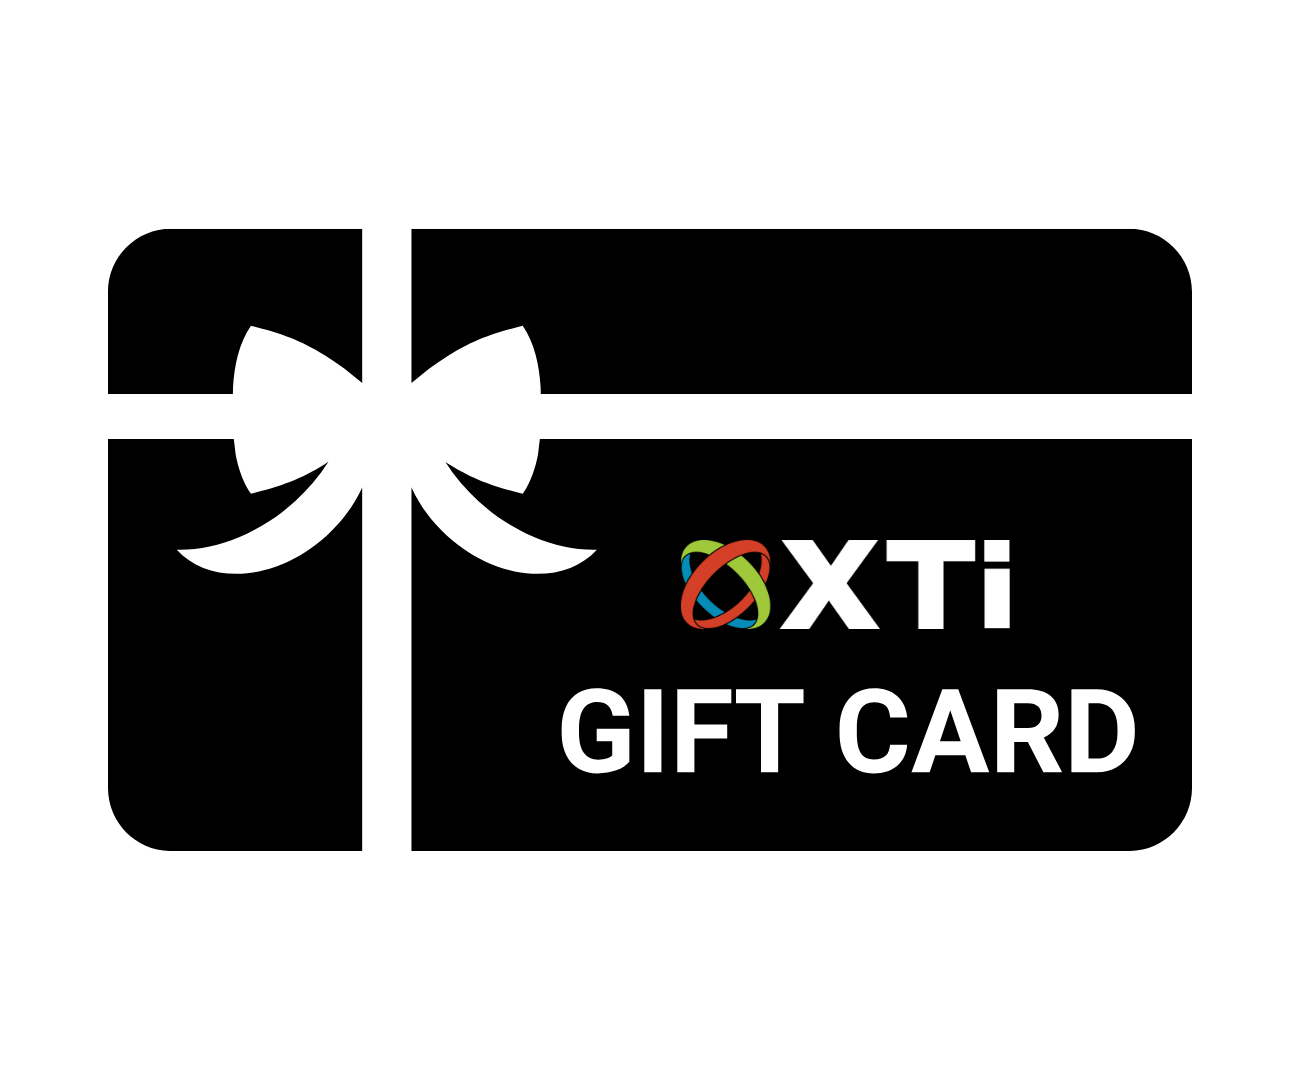 XTi Gift Card - XTi